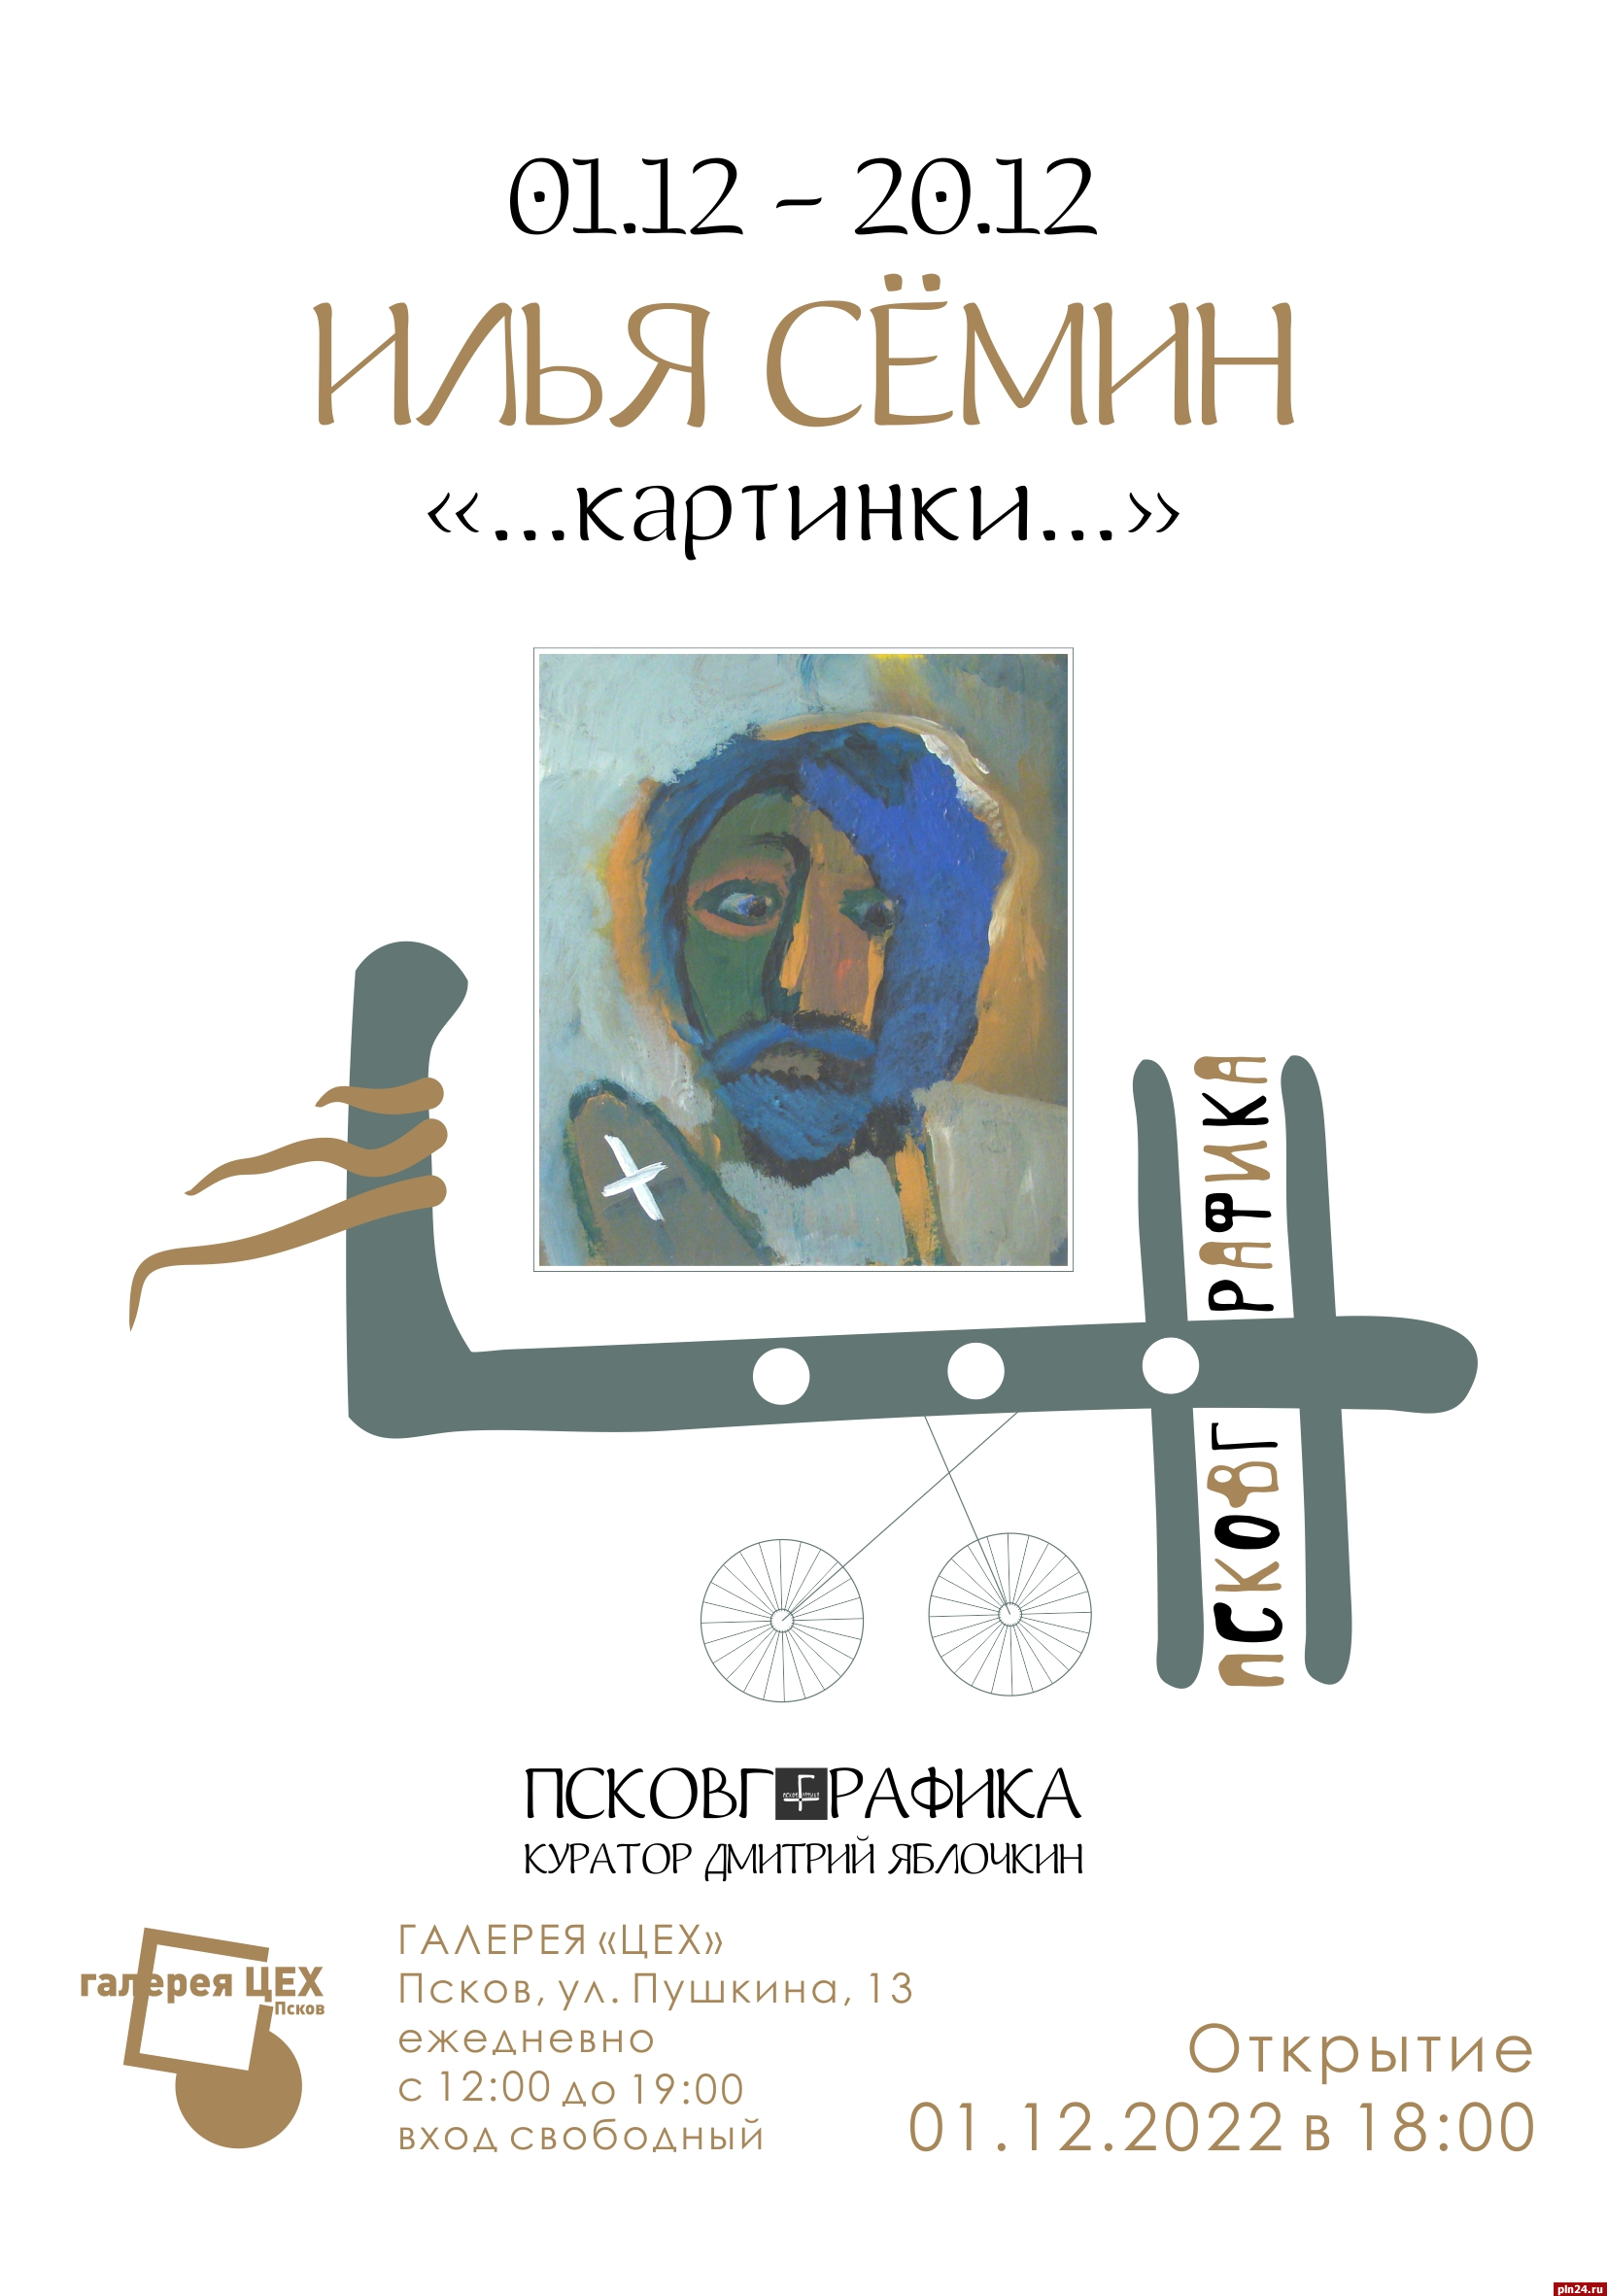 Выставка «Картинки» откроется в Пскове 1 декабря